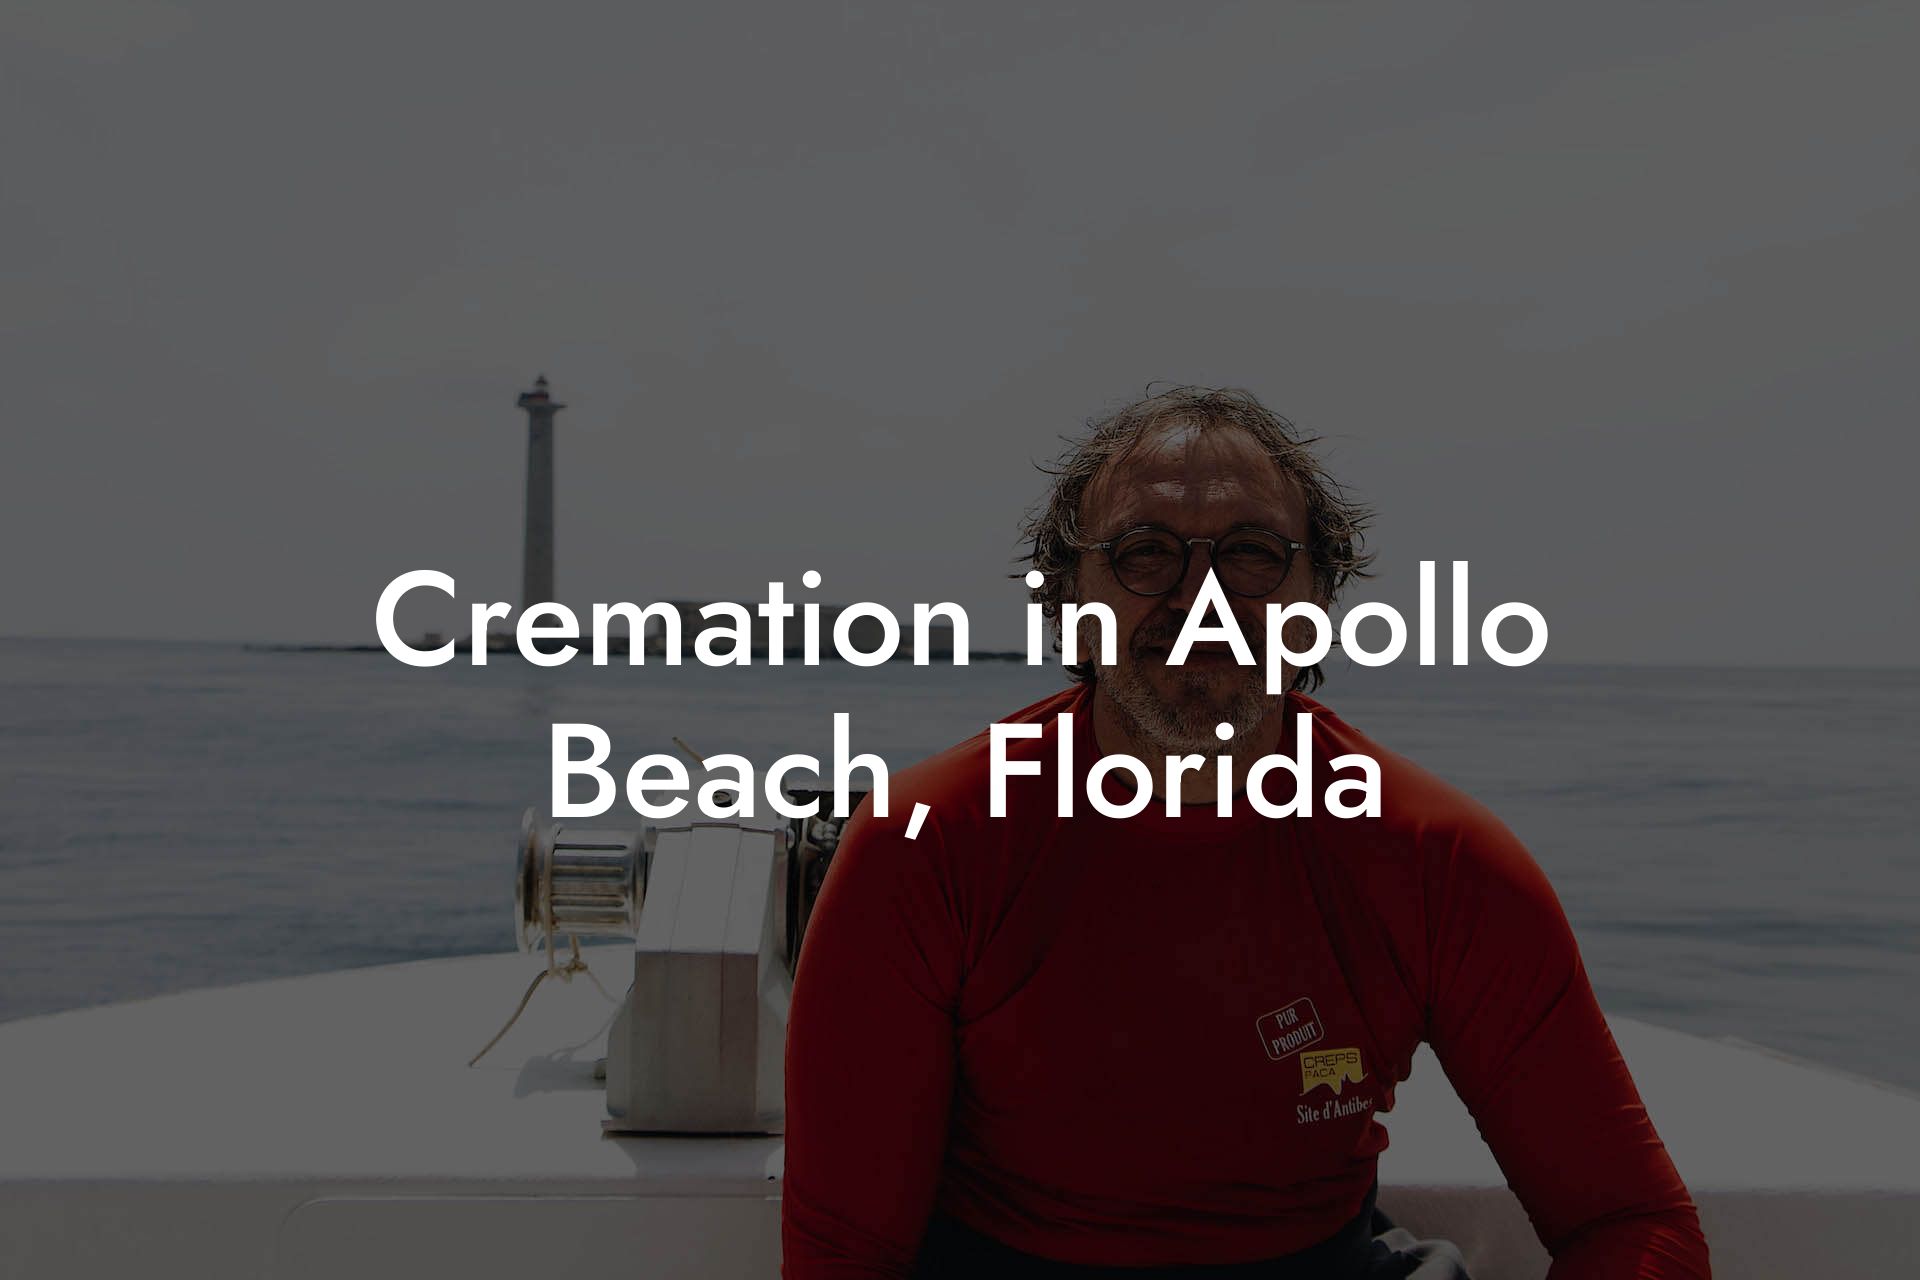 Cremation in Apollo Beach, Florida